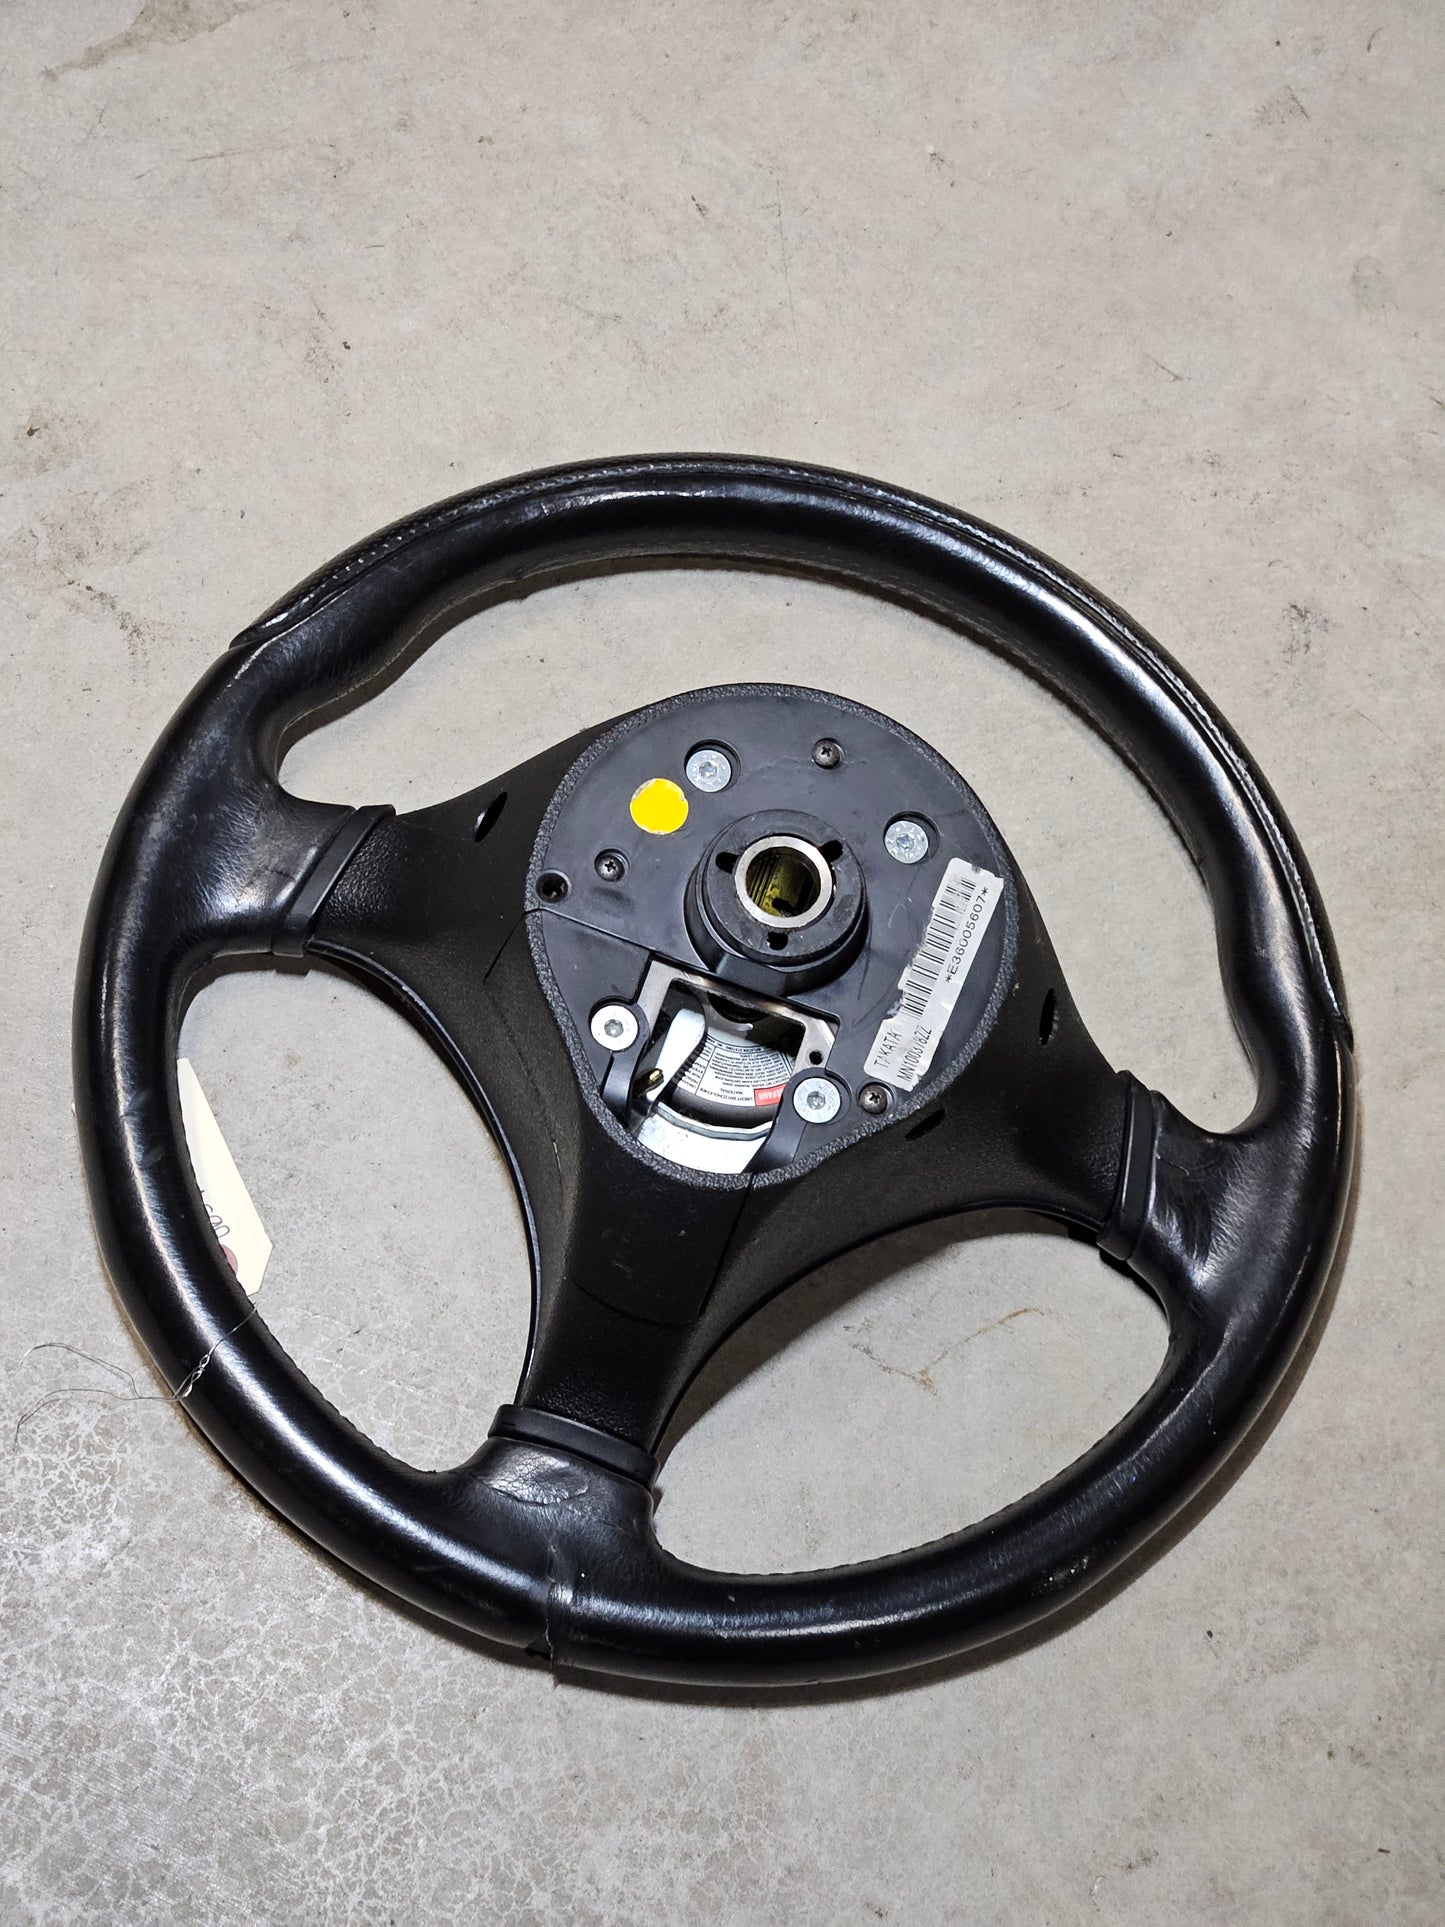 Evo 9 Steering Wheel